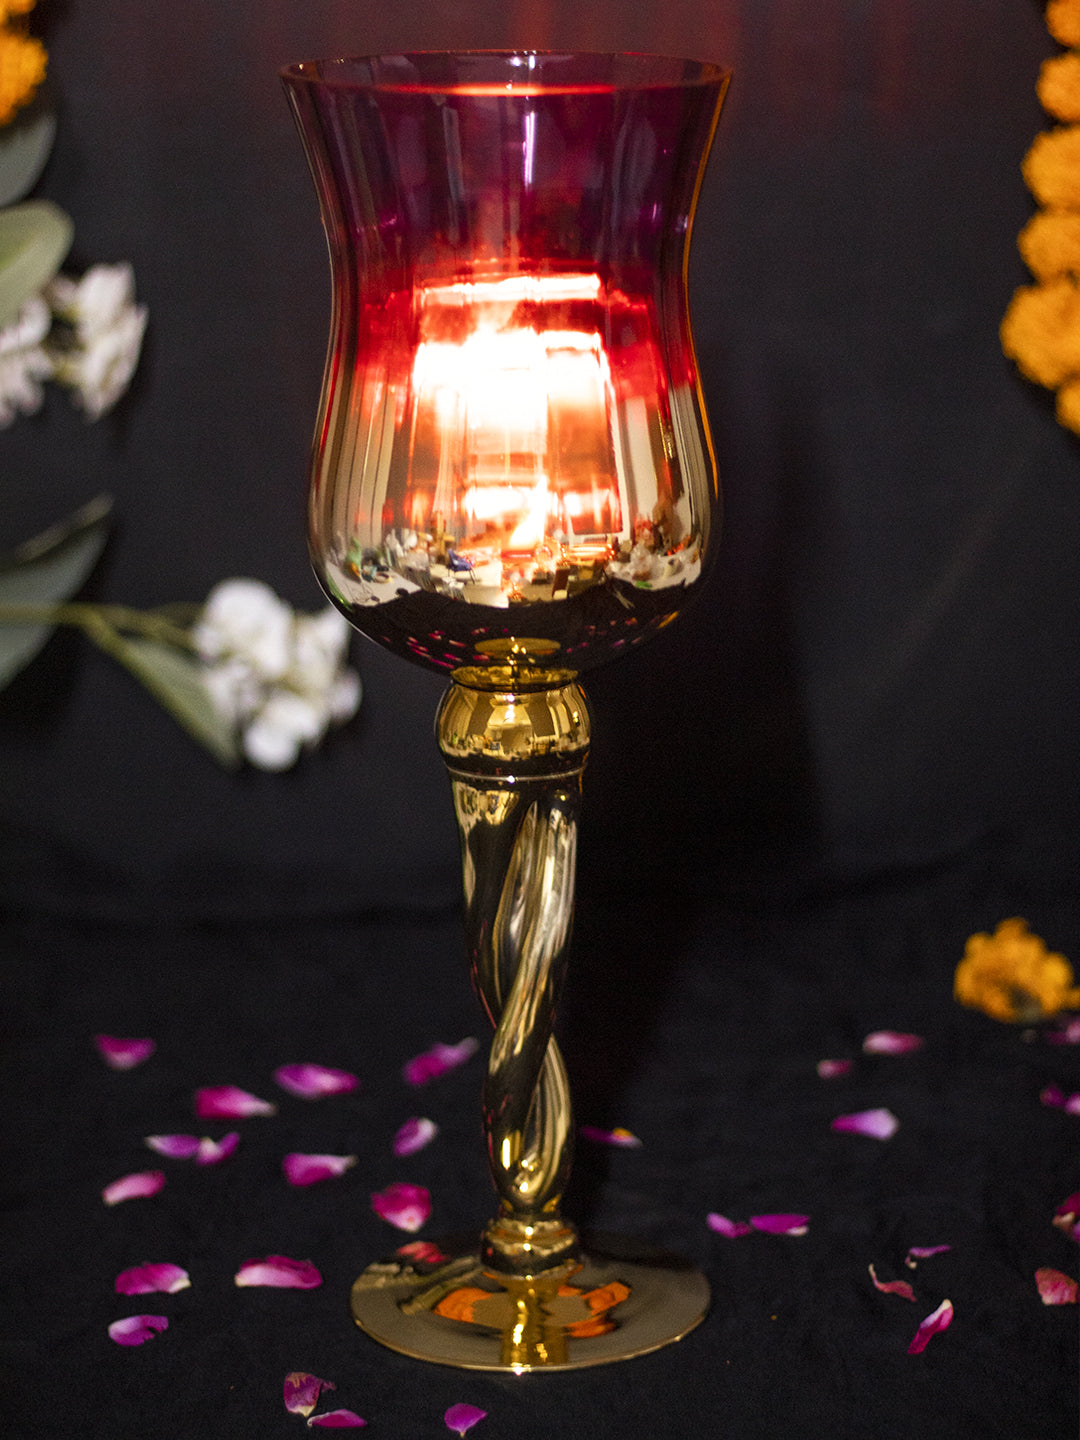 VON CASA Decorative Vintage Purple Tinted Glass Candlestick Holder